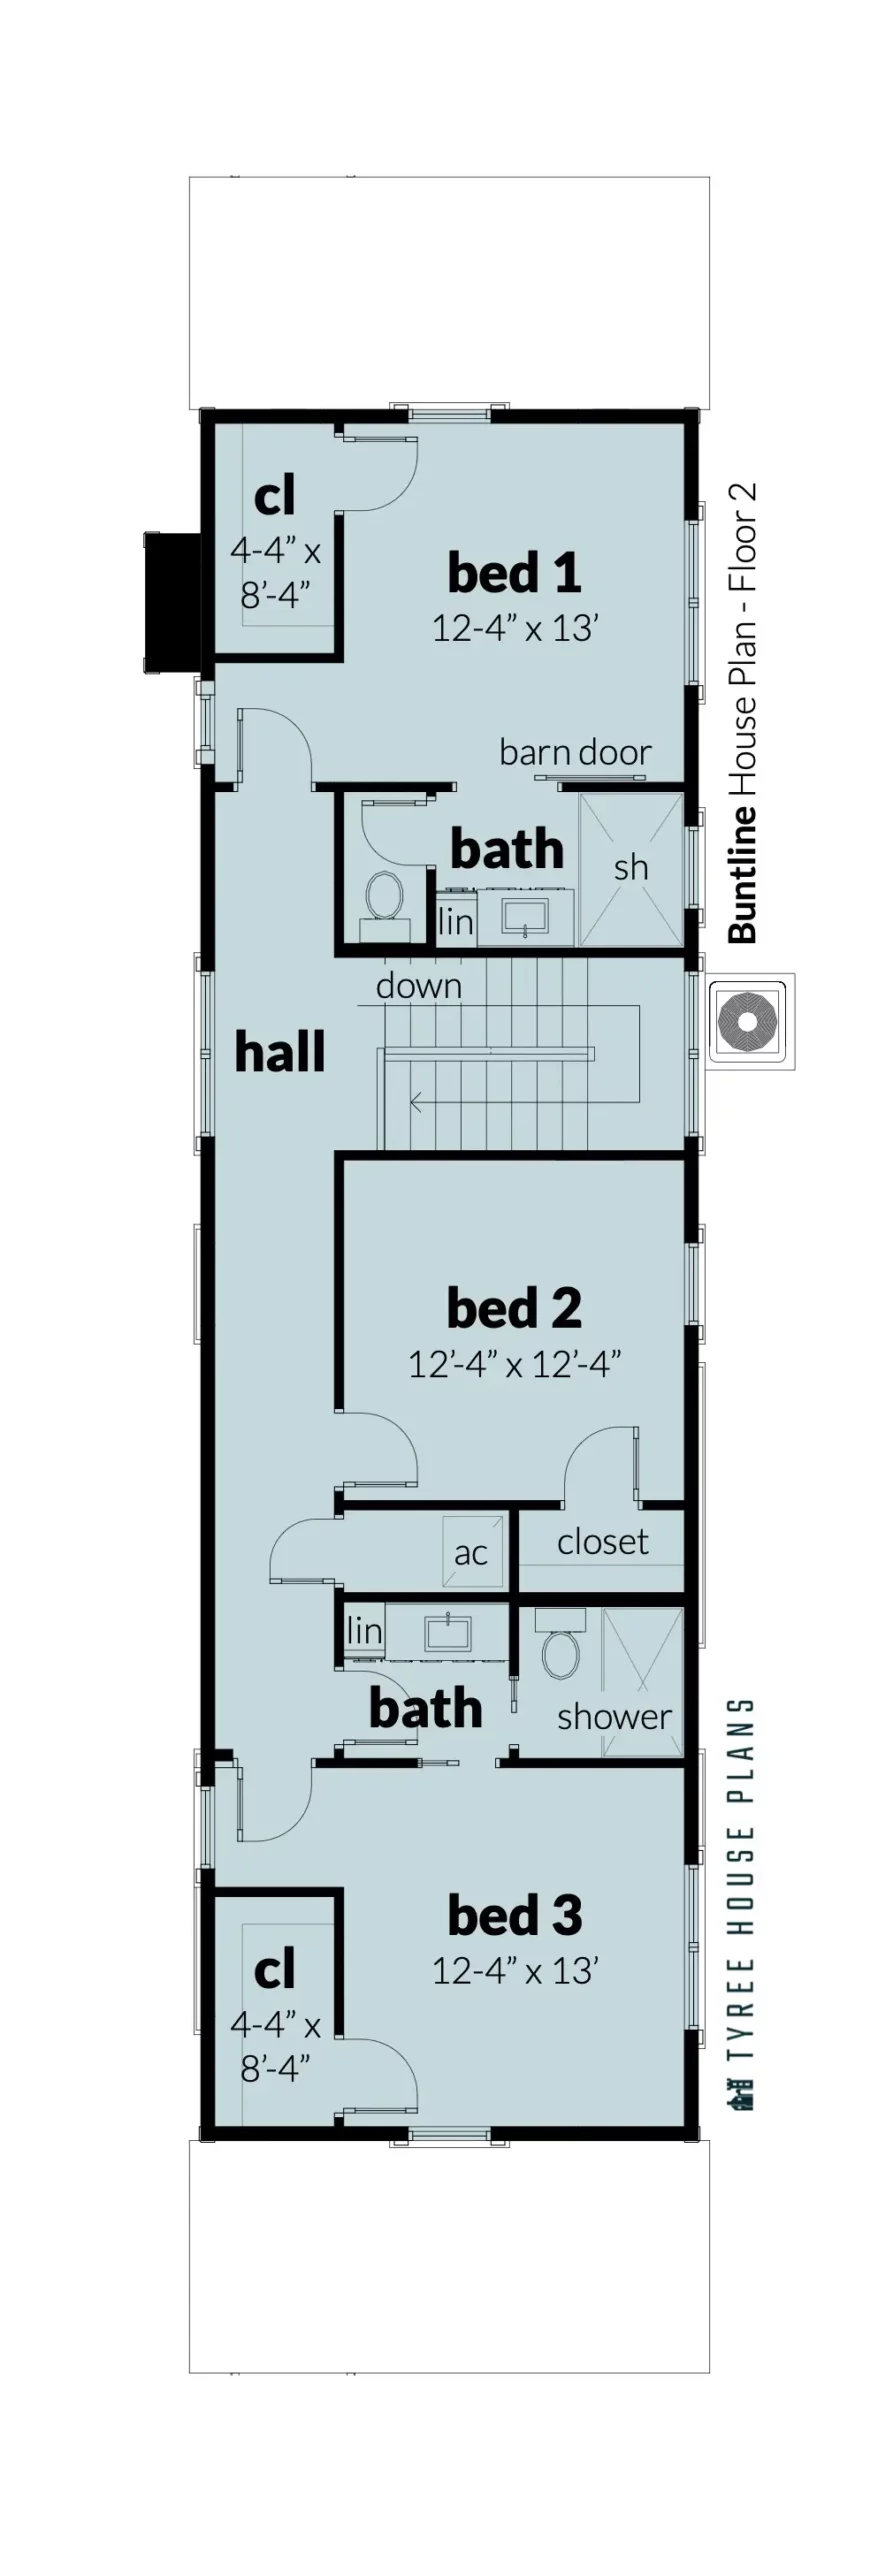 Floor 2 - Buntline by Tyree House Plans